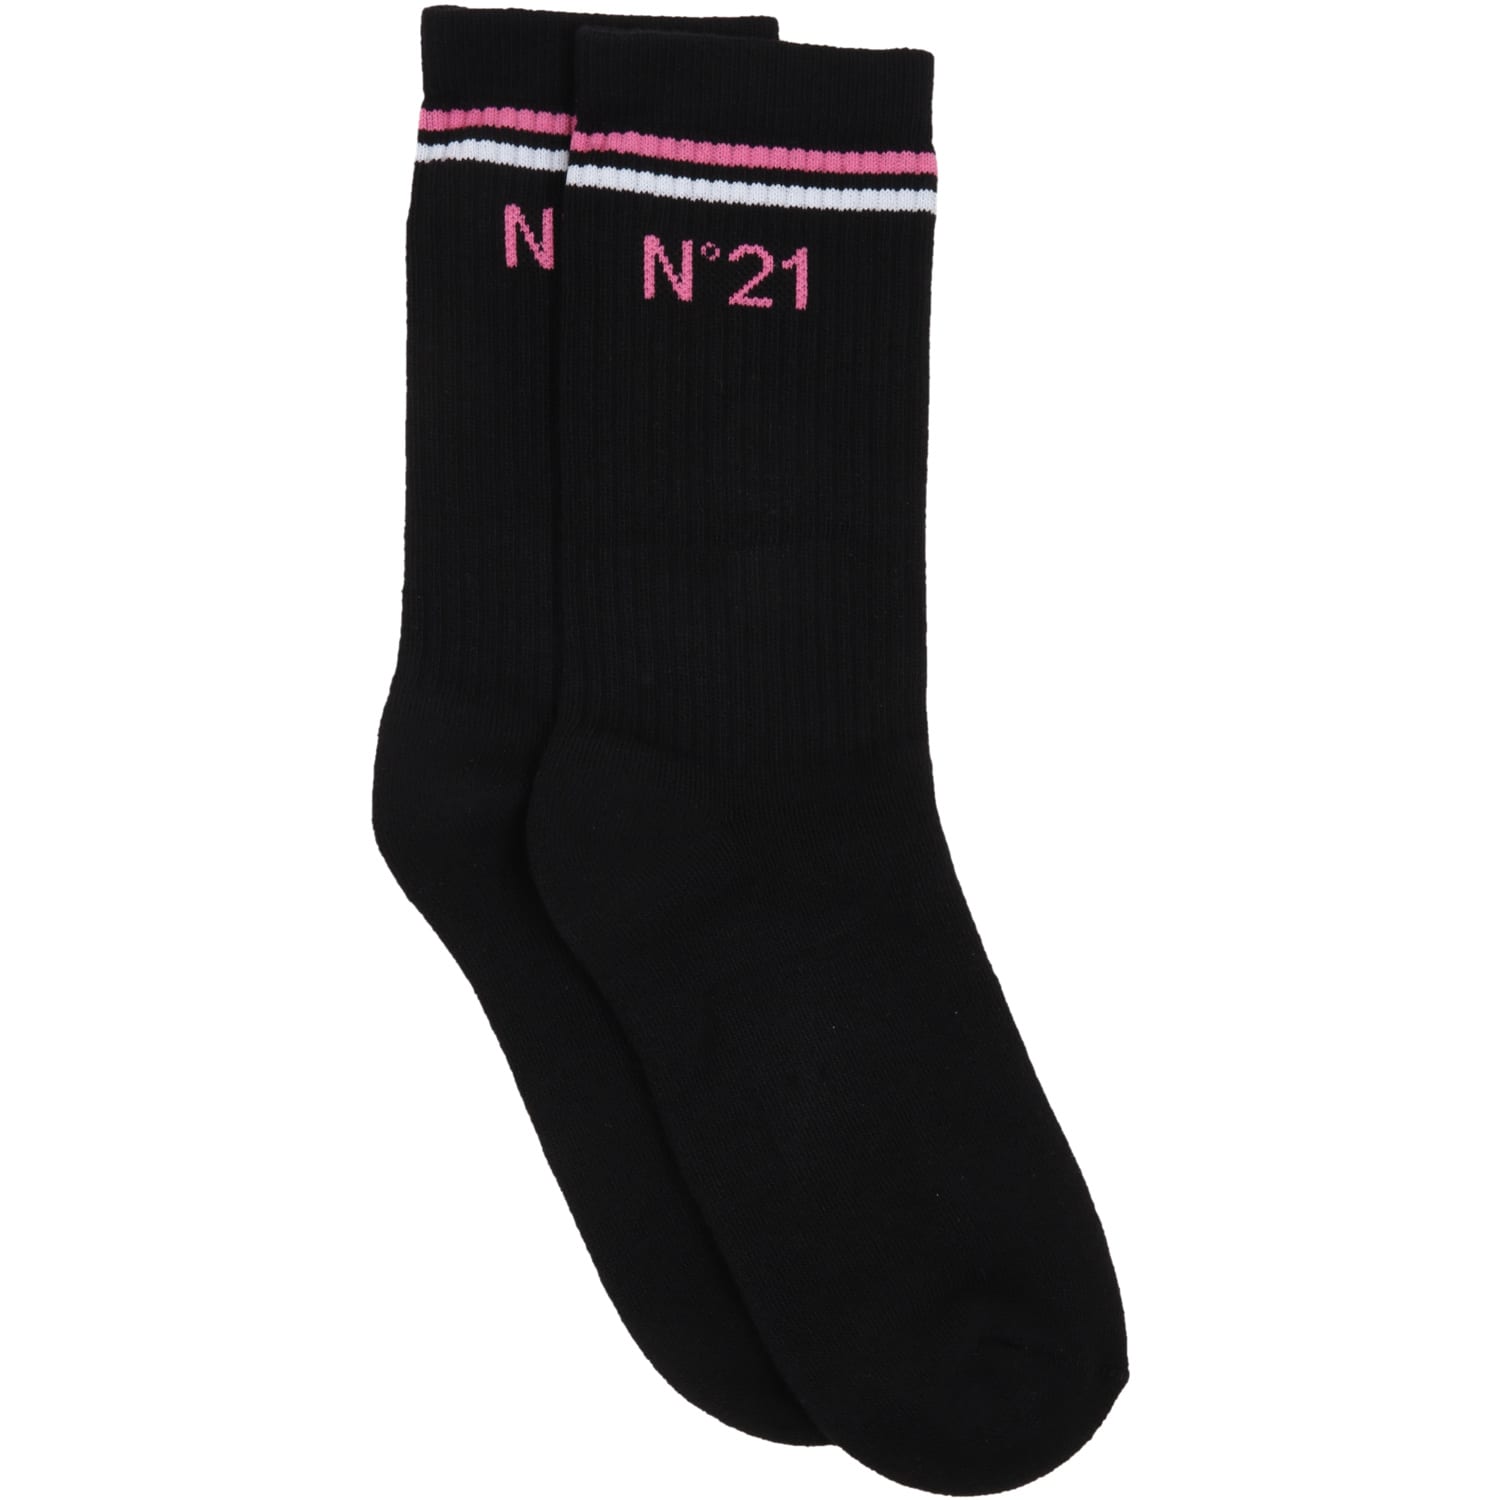 N.21 Black Socks For Girl With Logo